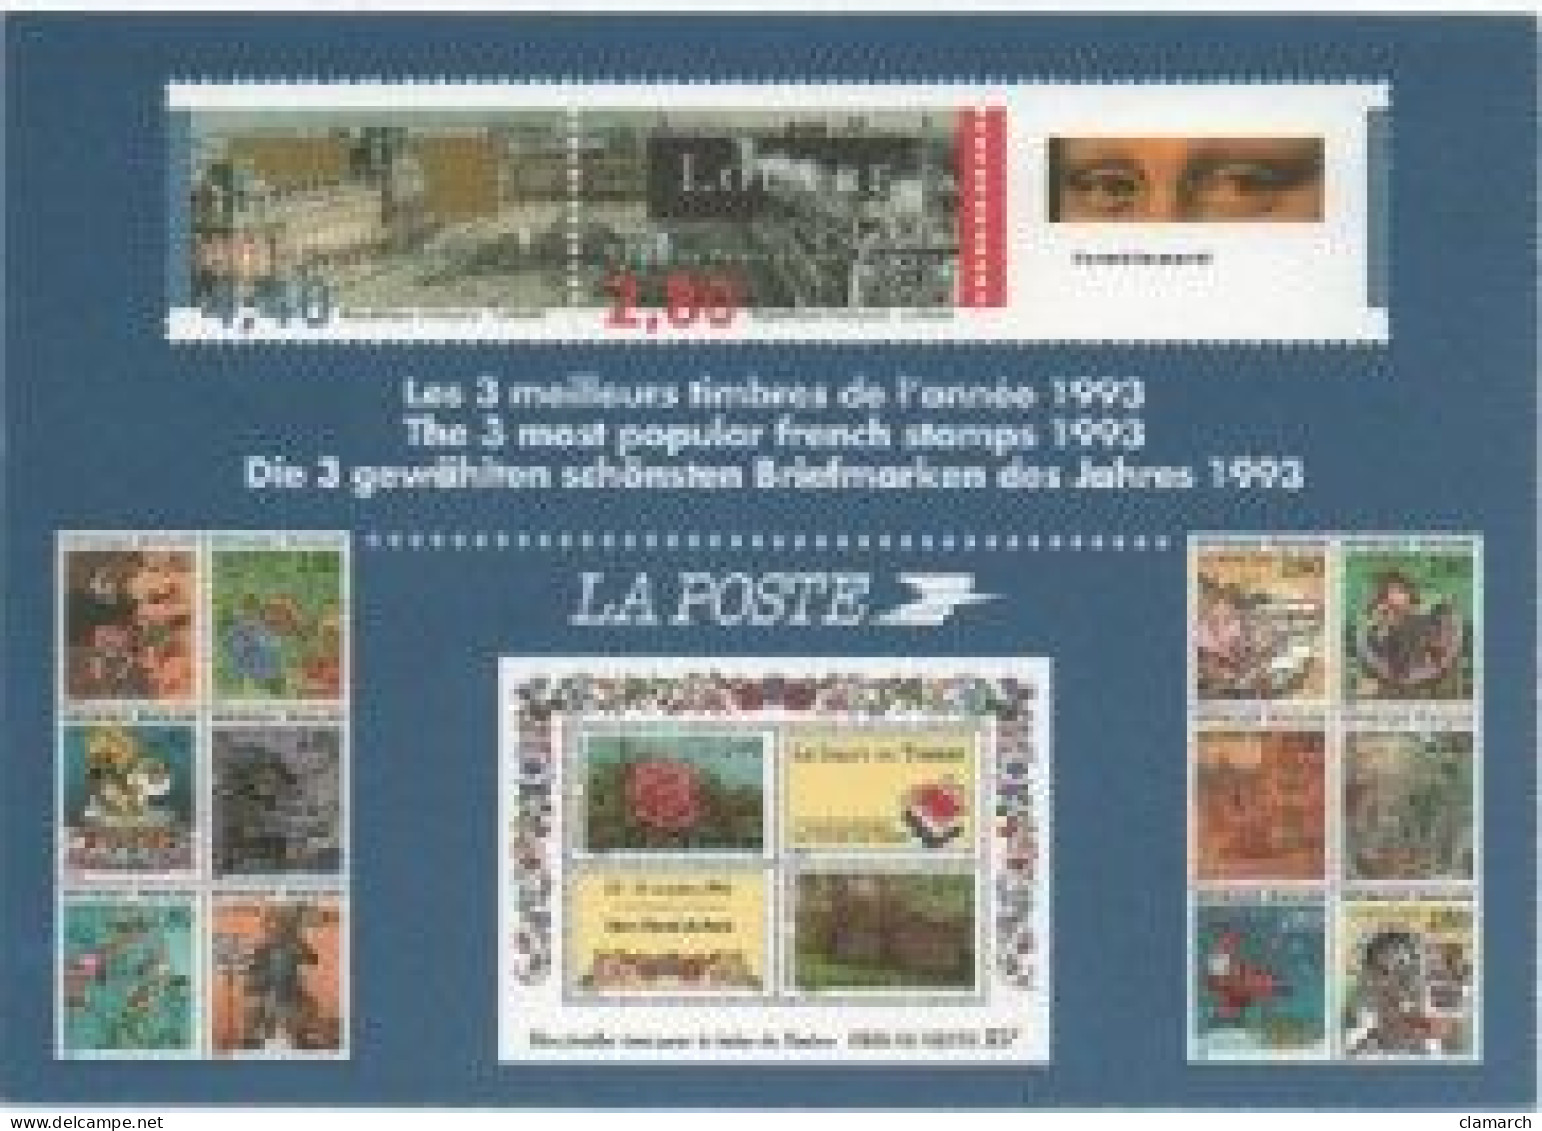 FRANCE-17 cartes Souvenirs philatéliques-frais d'envoi pour la F 4.30